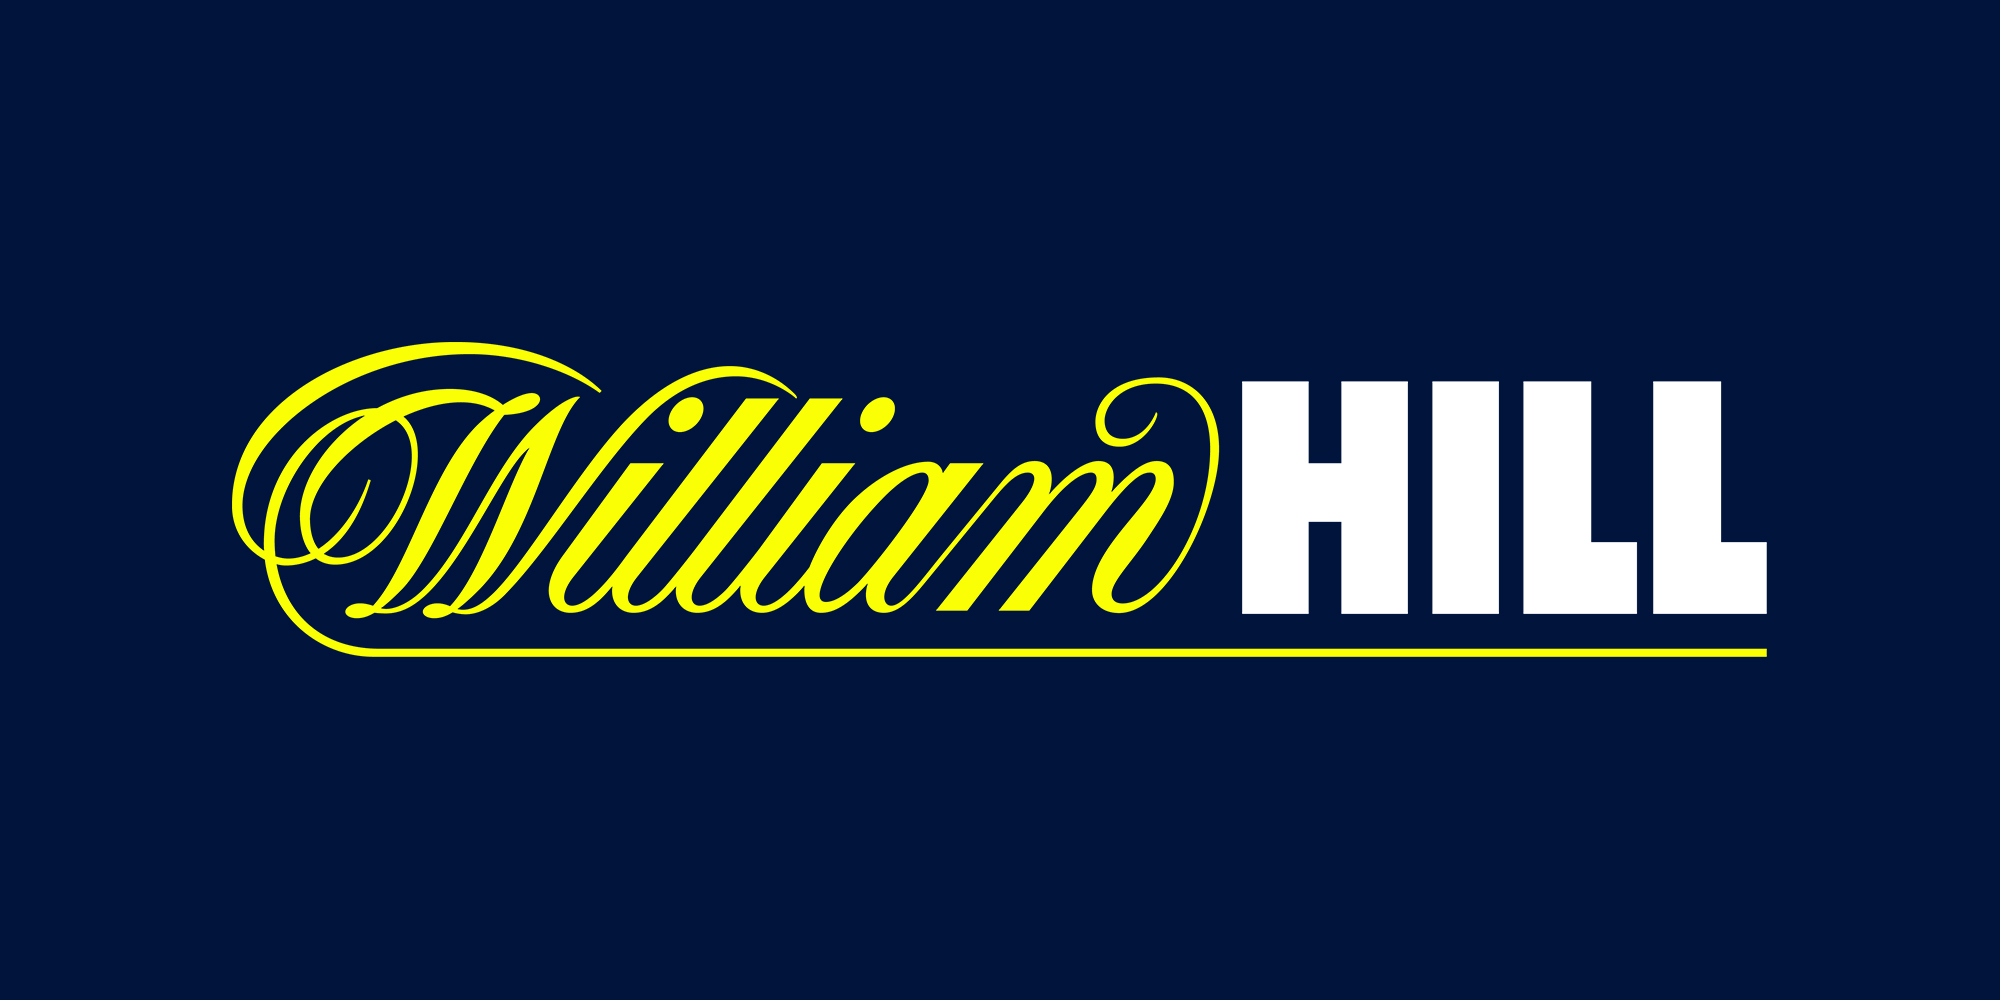 William Hill plc